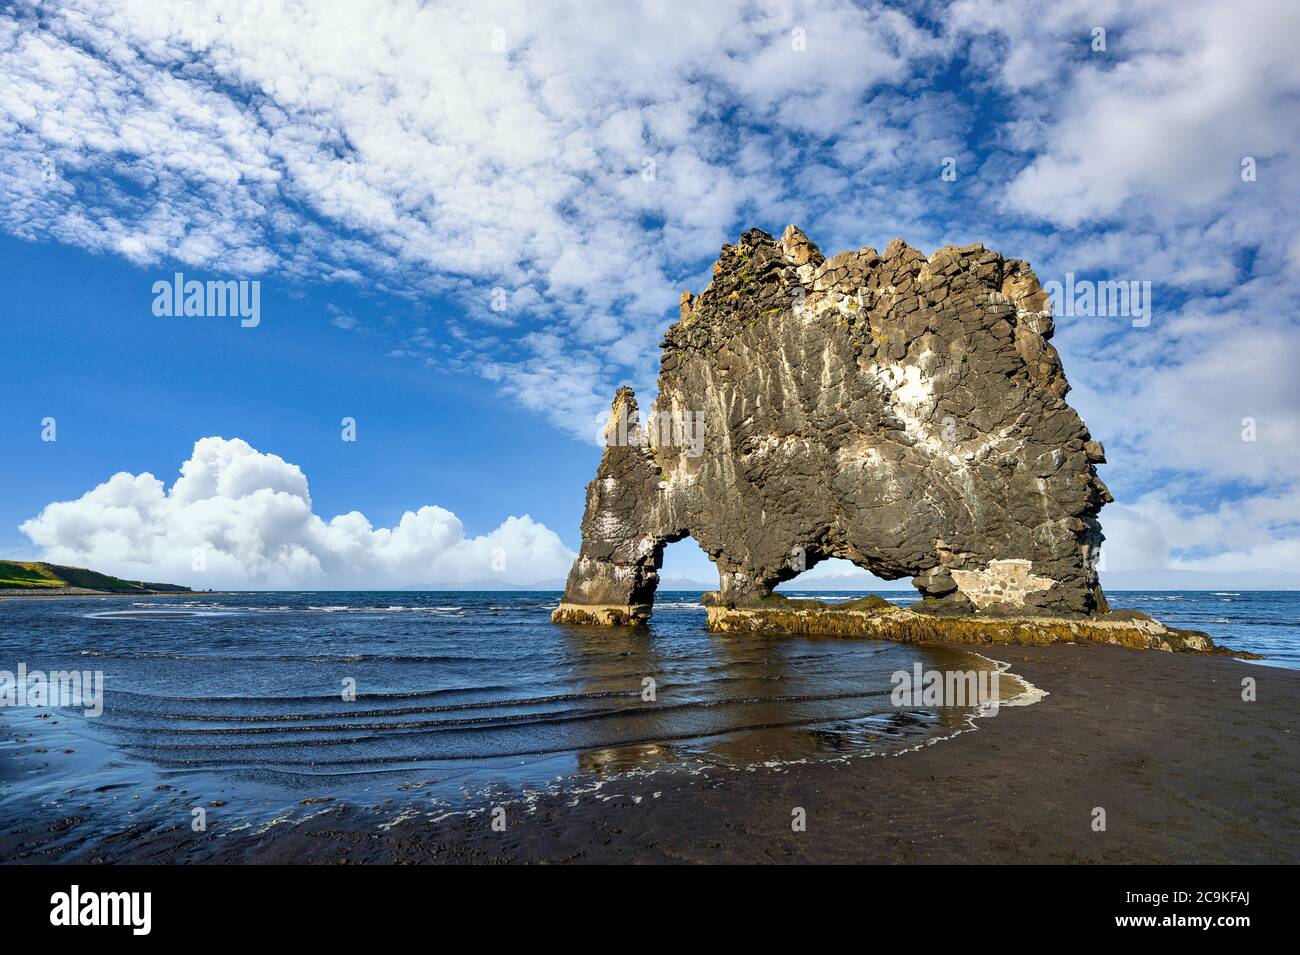 Hvitserkur est une étrange pierre en forme de dragon et de monstre. Sur la côte nord de l'Islande, sur un ciel bleu clair et de beaux nuages, cet endroit Banque D'Images